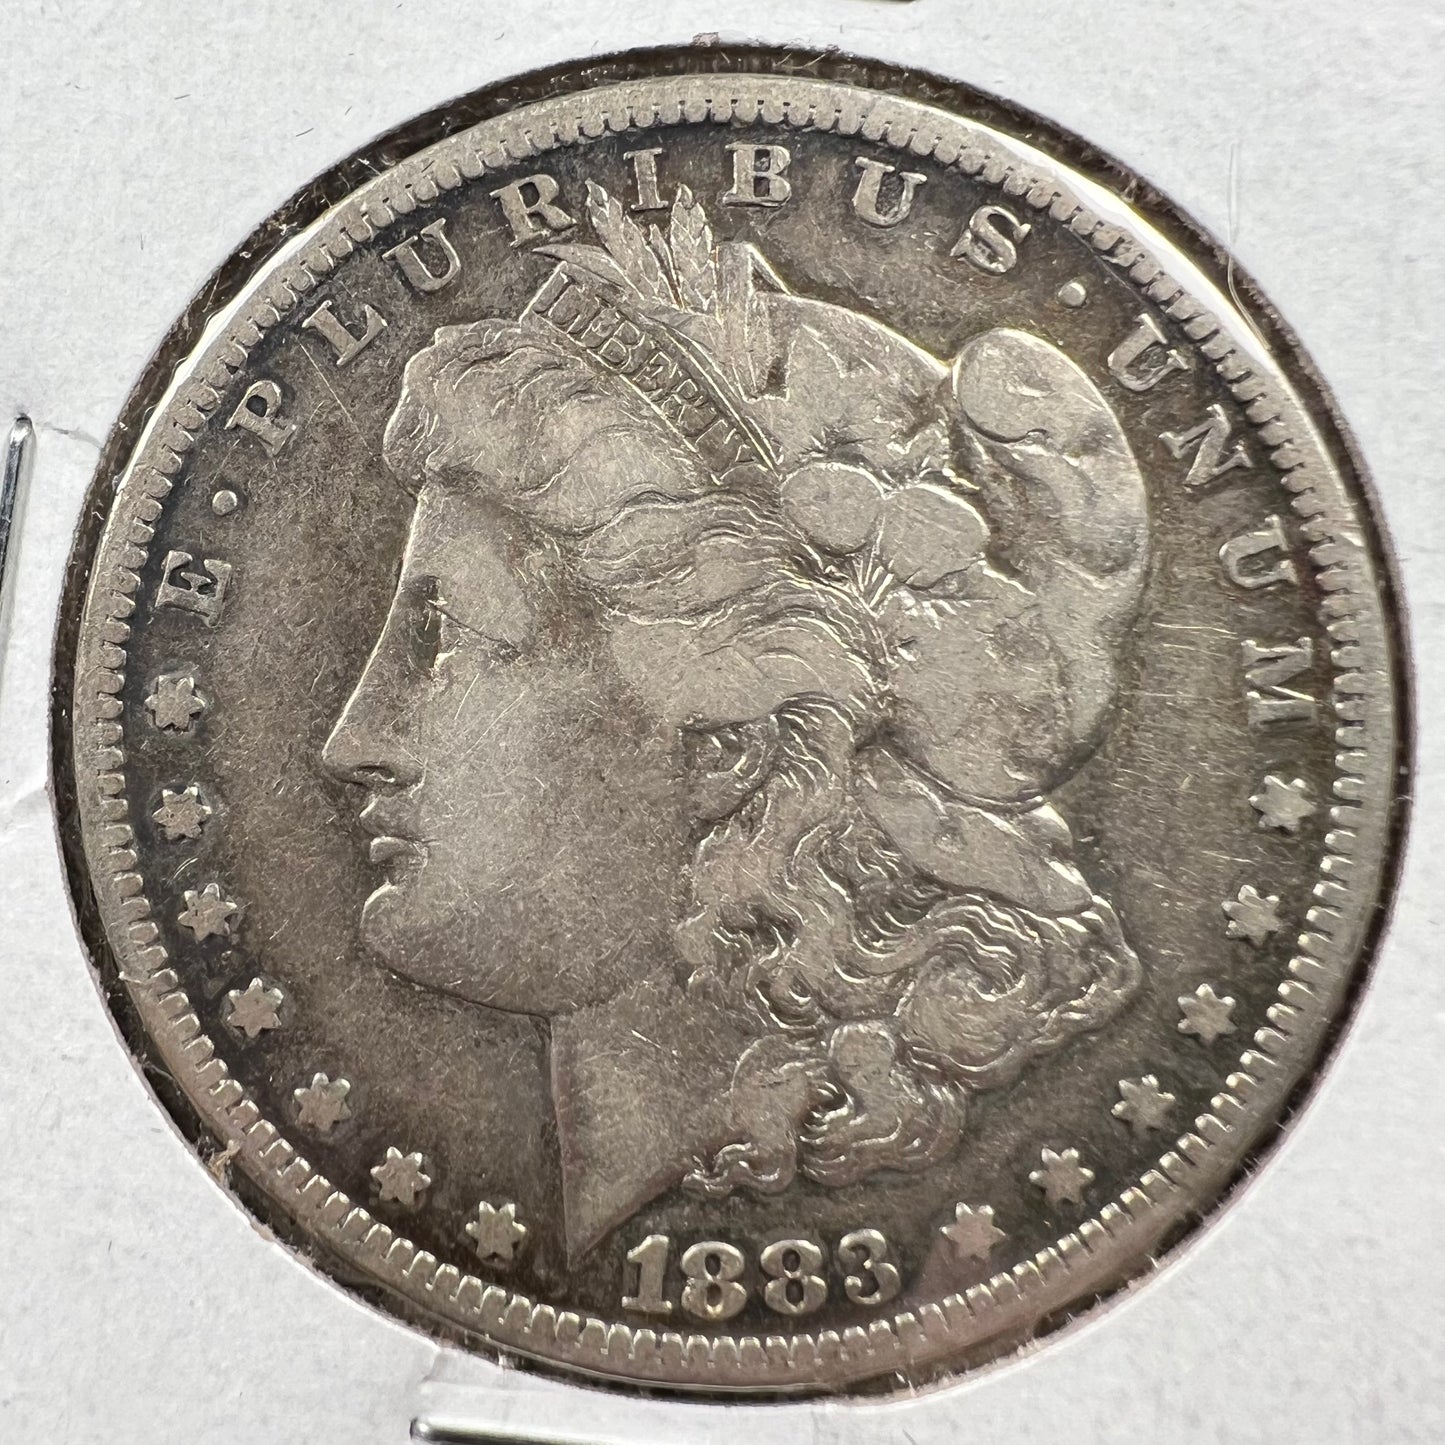 1883-CC $1 Morgan Dollar VF details (raw)